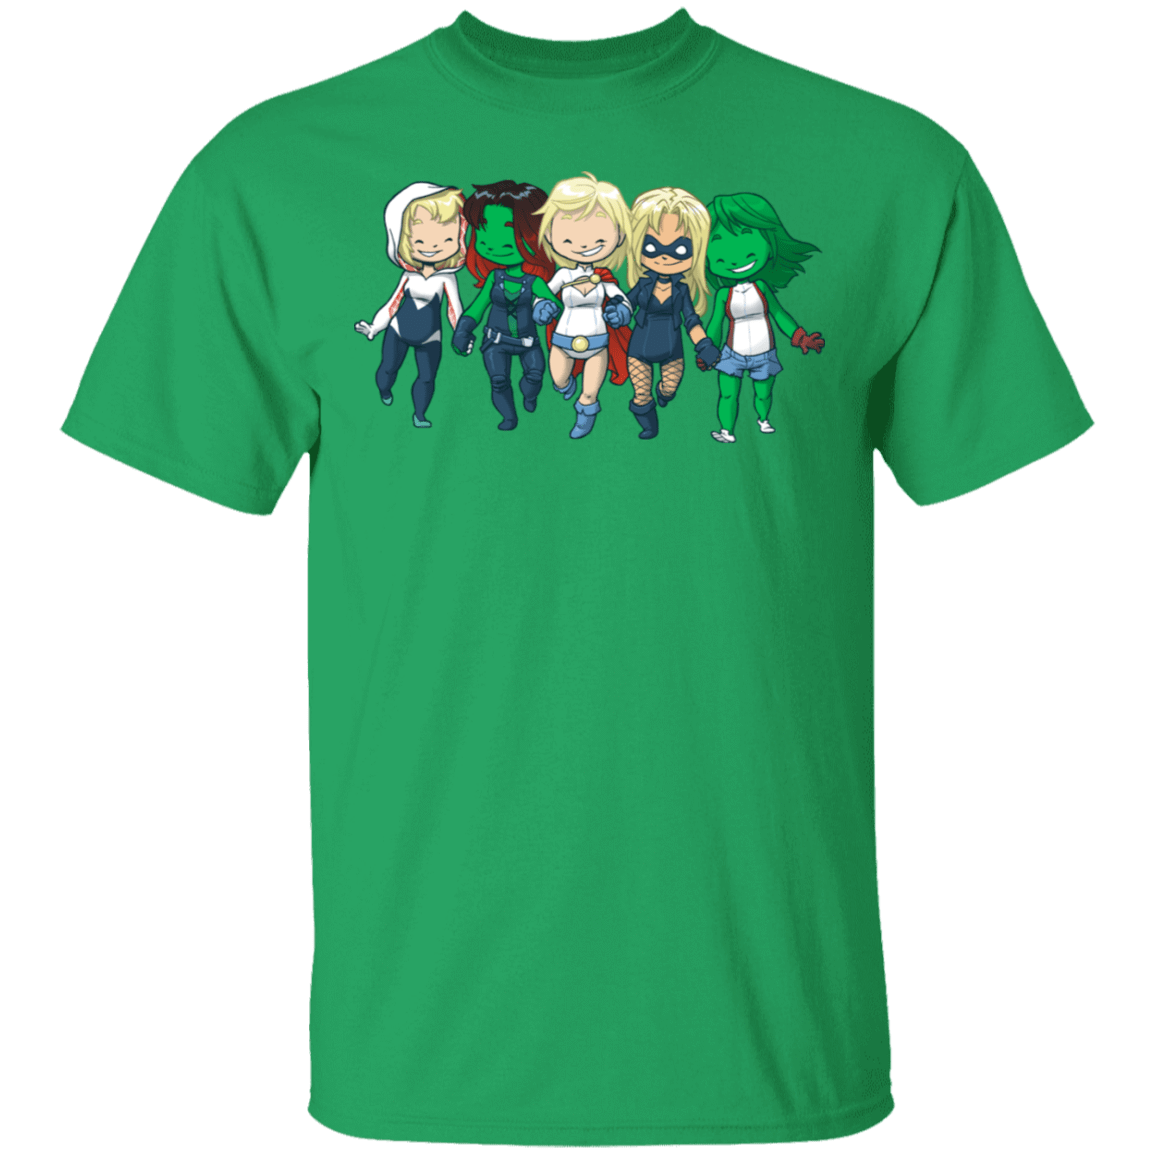 T-Shirts Irish Green / S Teenage BFFs T-Shirt